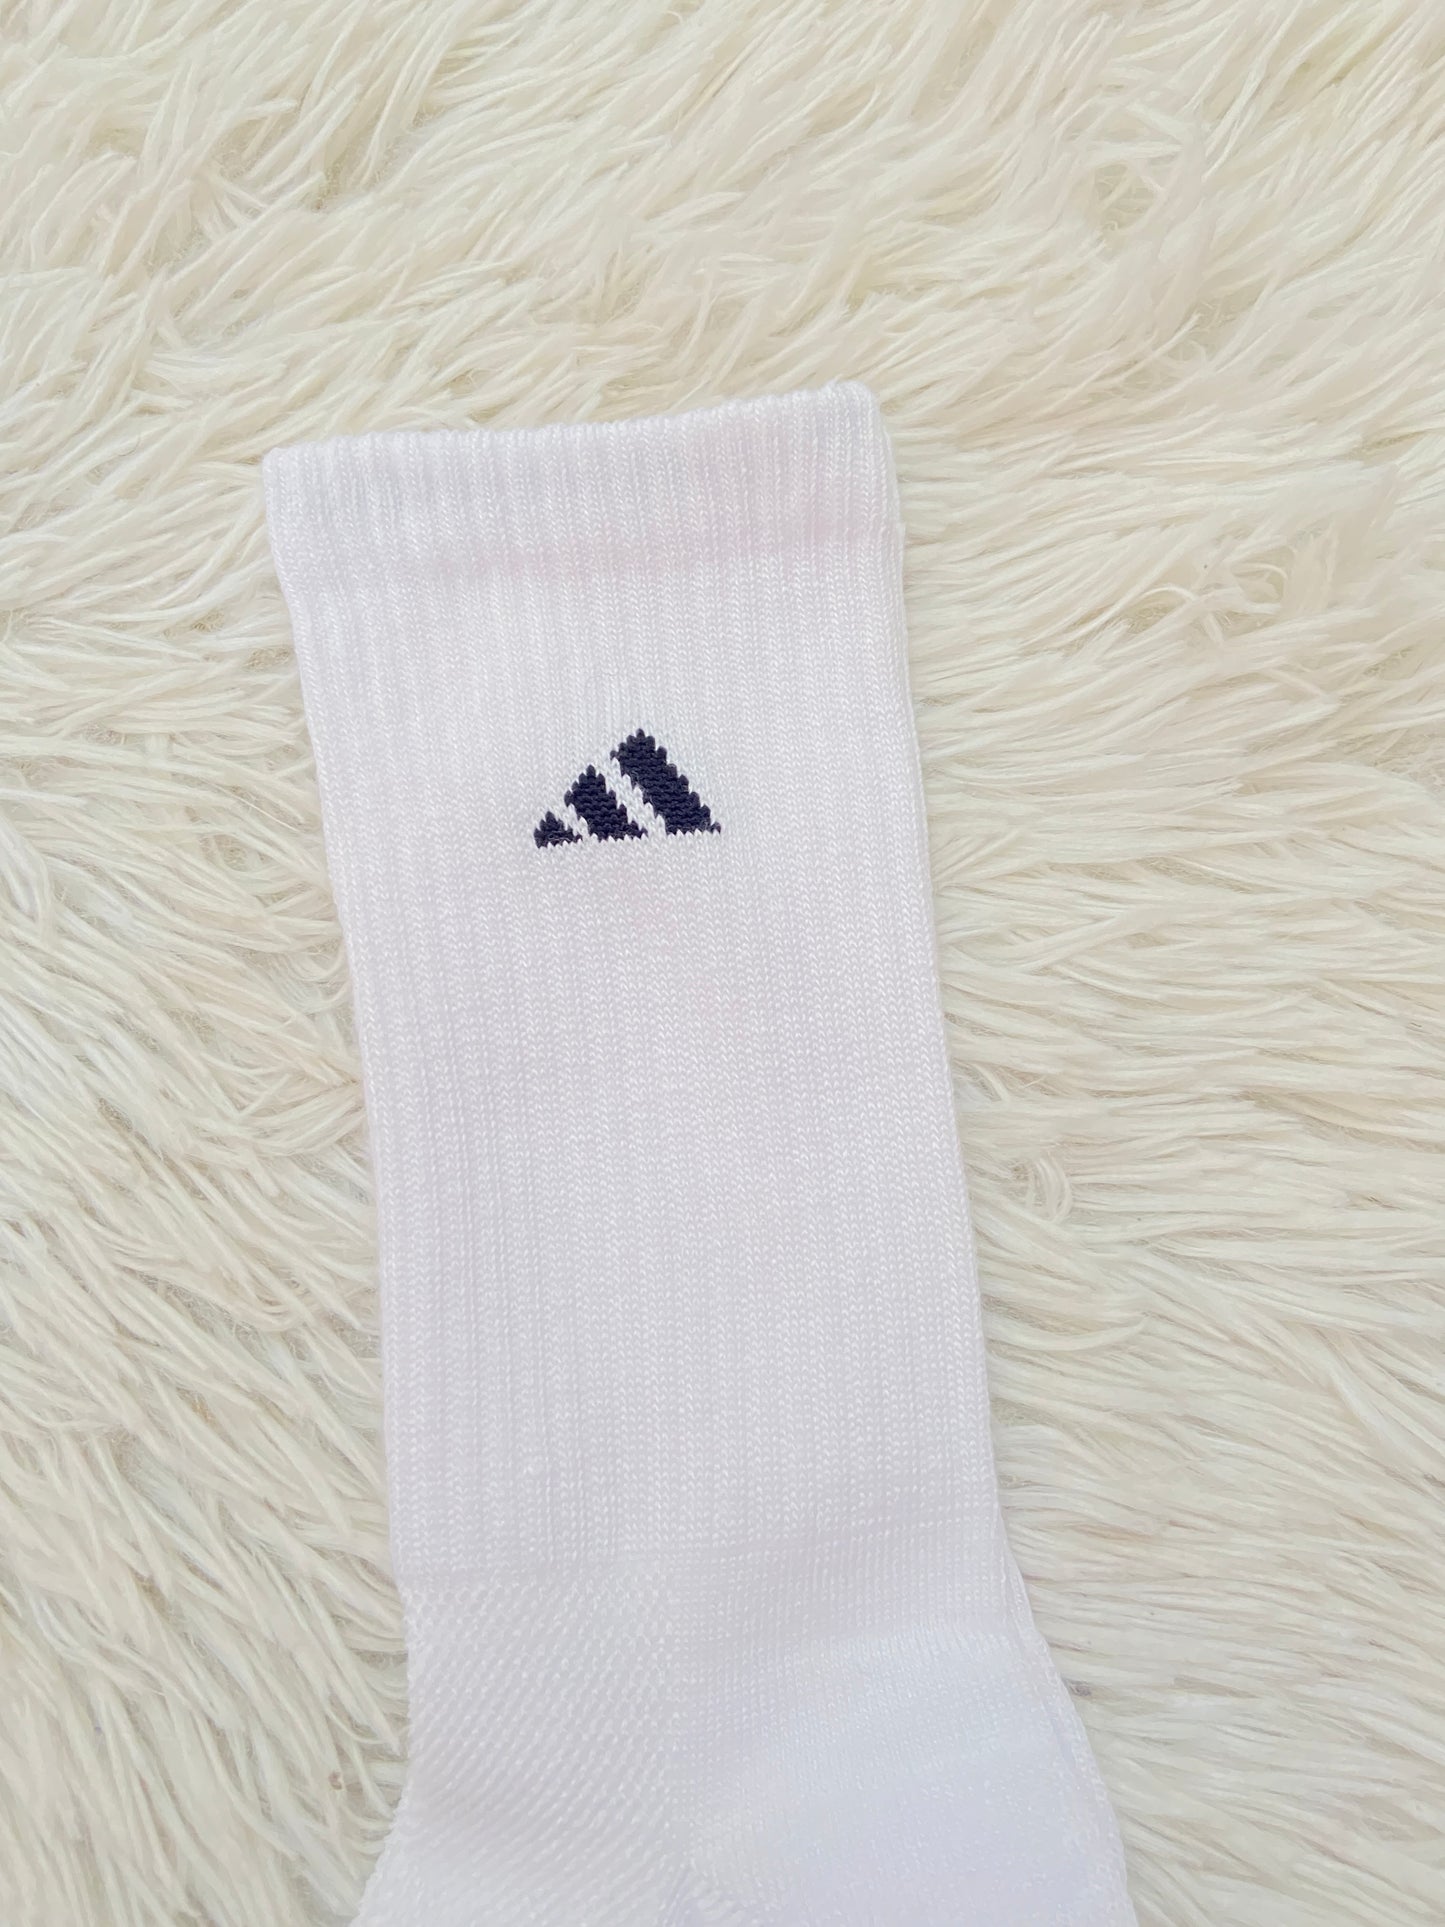 Medias Adidas original blanca, con logotipo de la marca en negro.